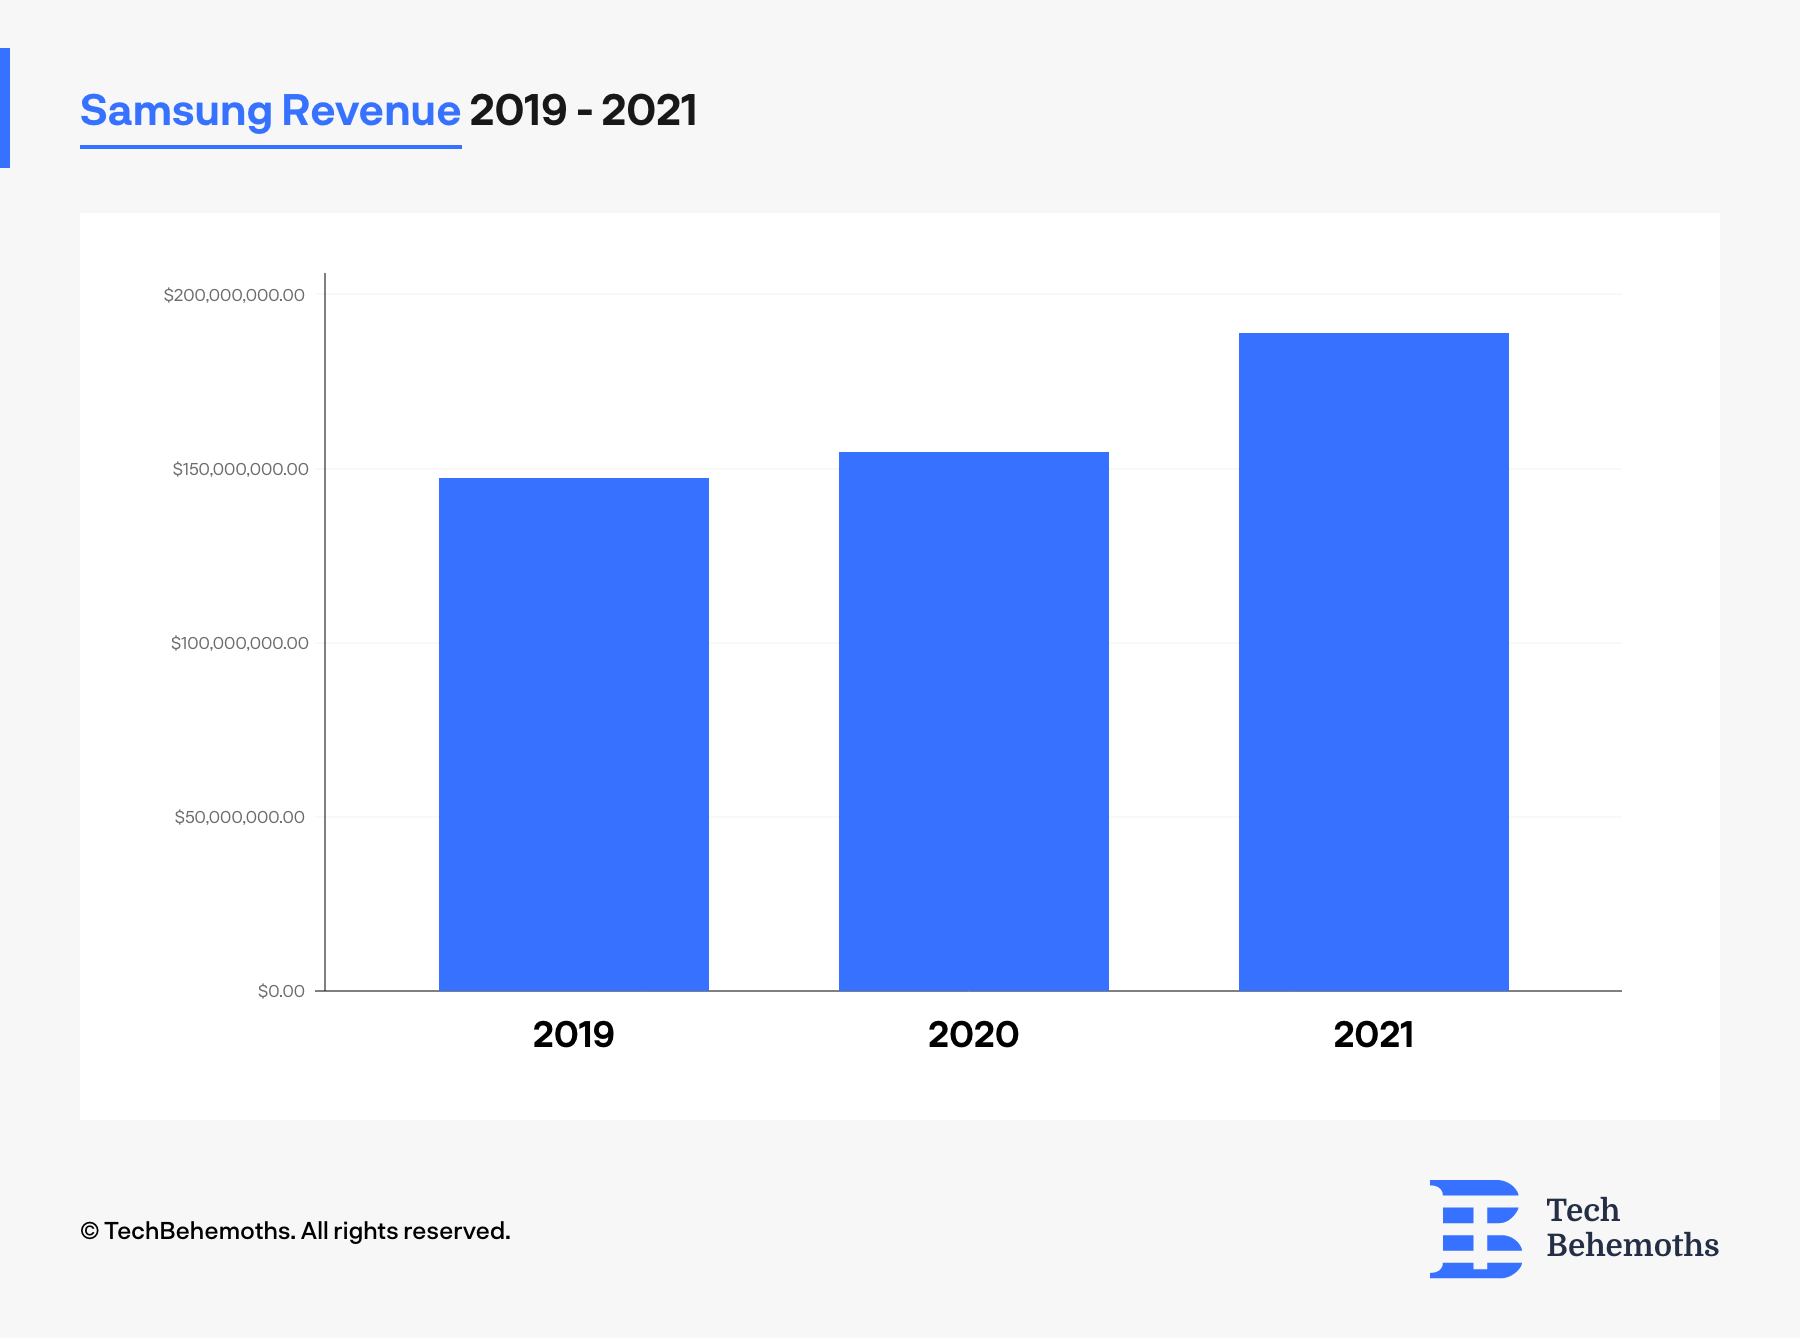 Samsung Revenue 2019-2021